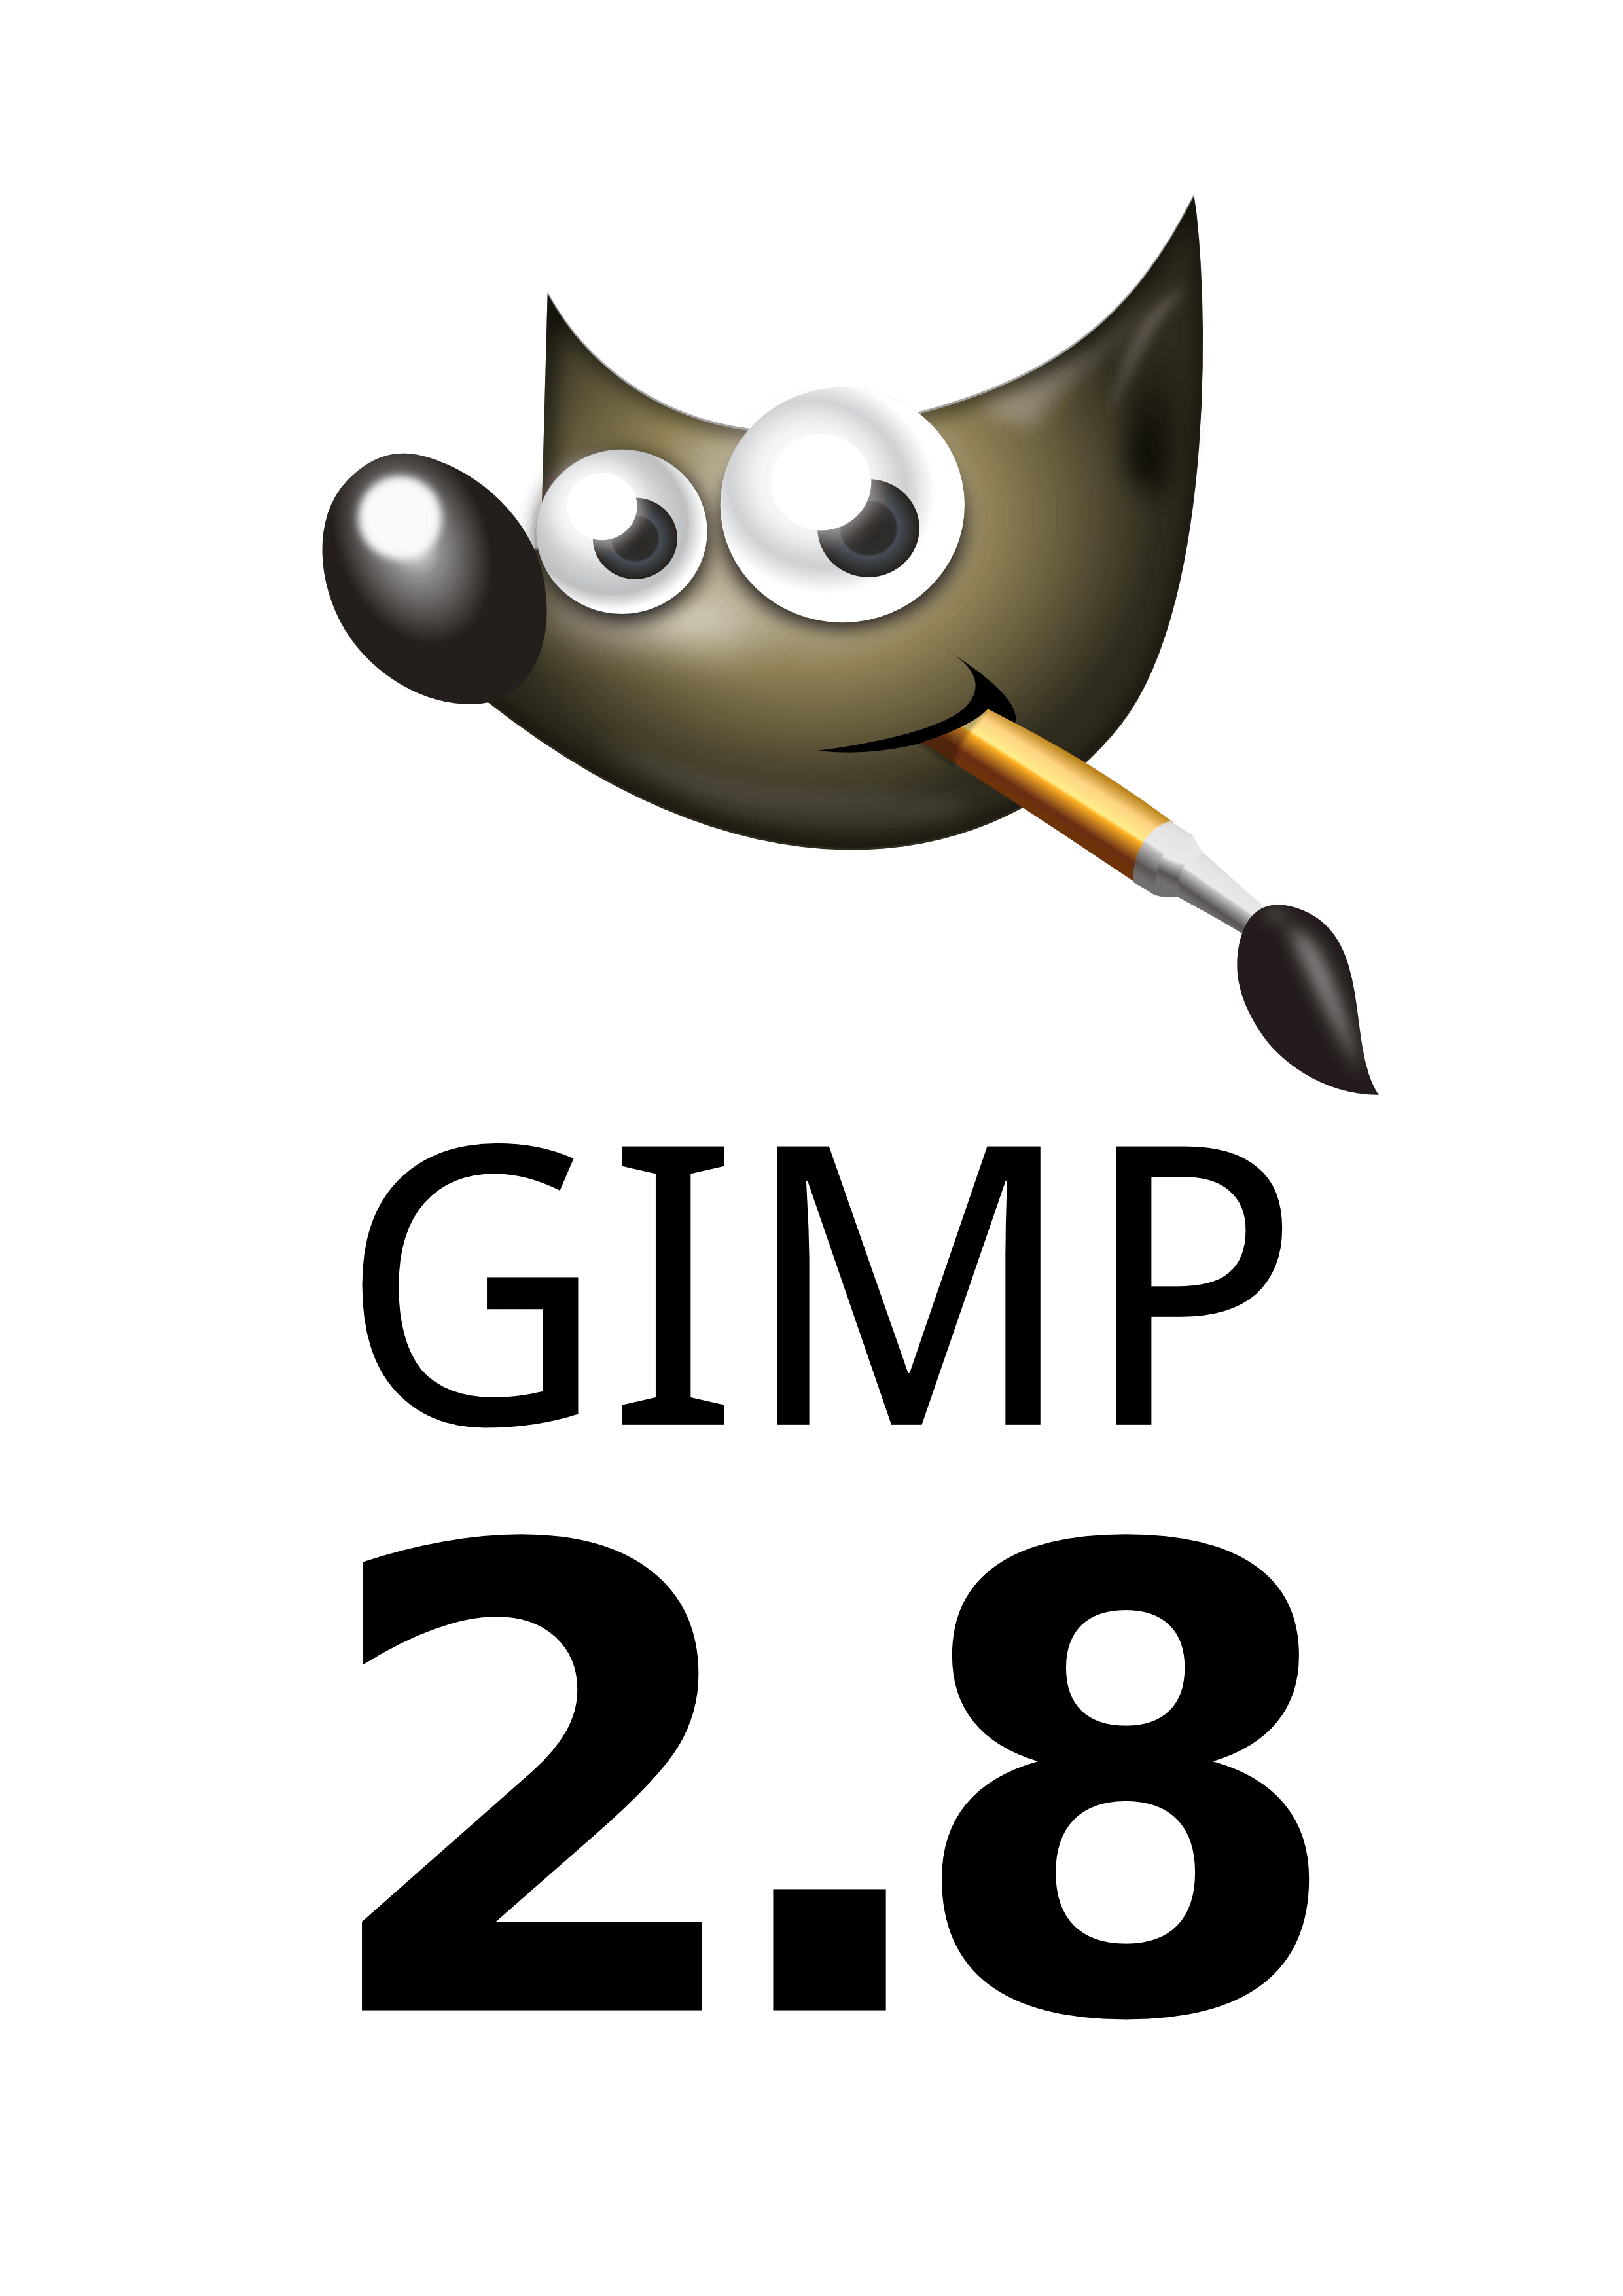 GIMP Logo - GIMP Chat • Vector GIMP 2.8 logo